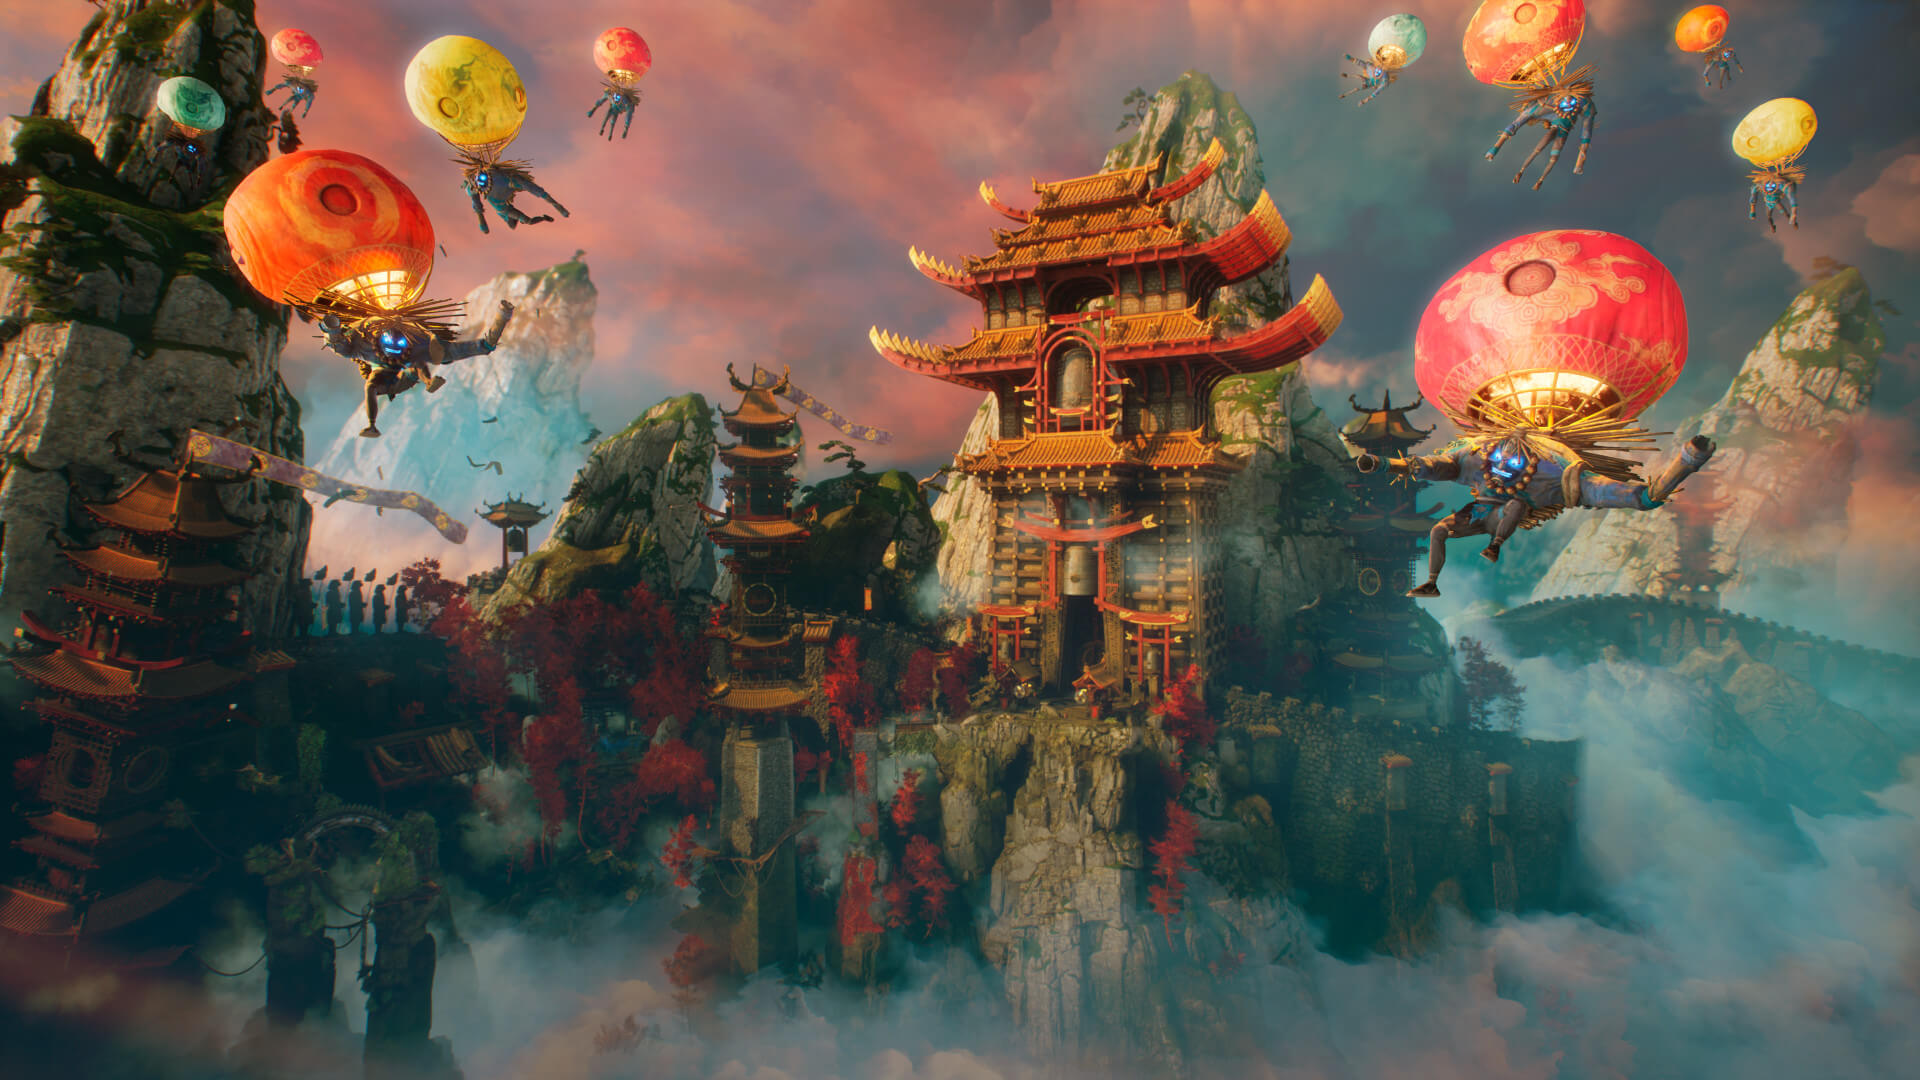 《影子武士3》首批游戏截图发布 2021年发售